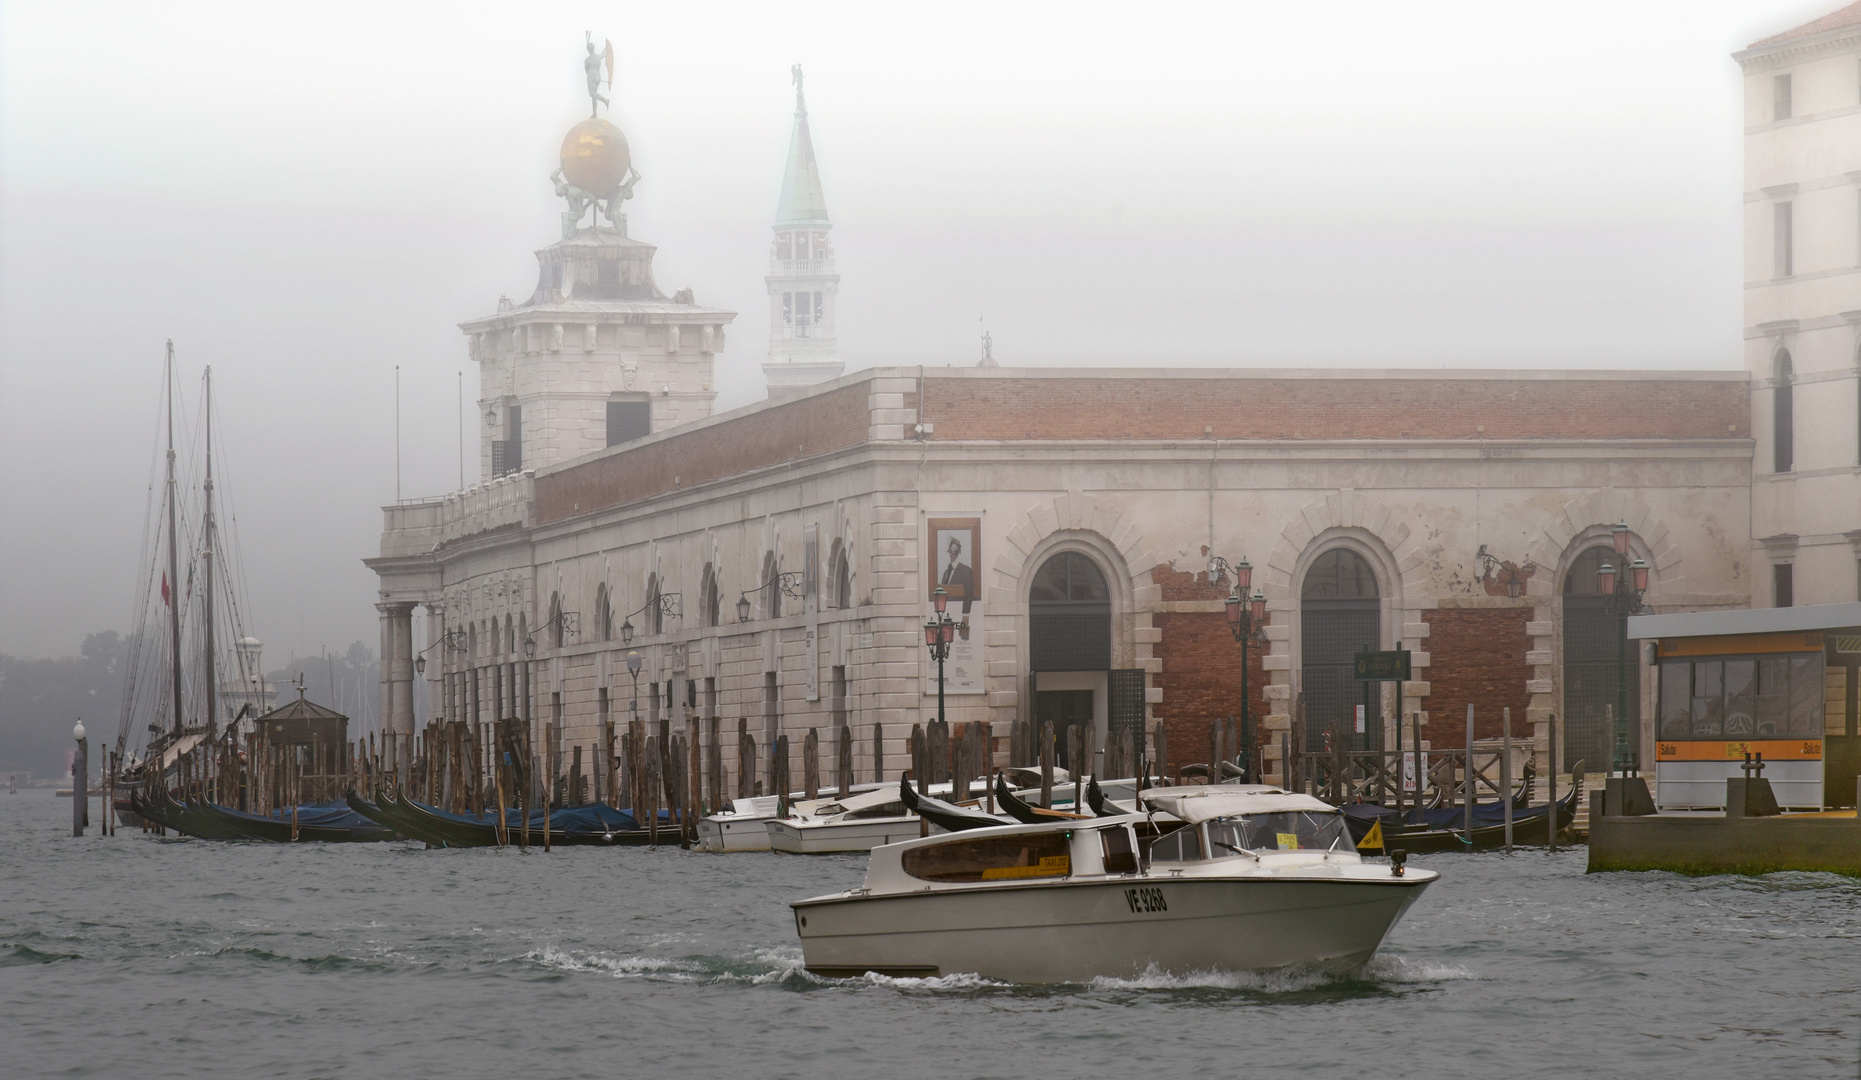 Venedig November 2020